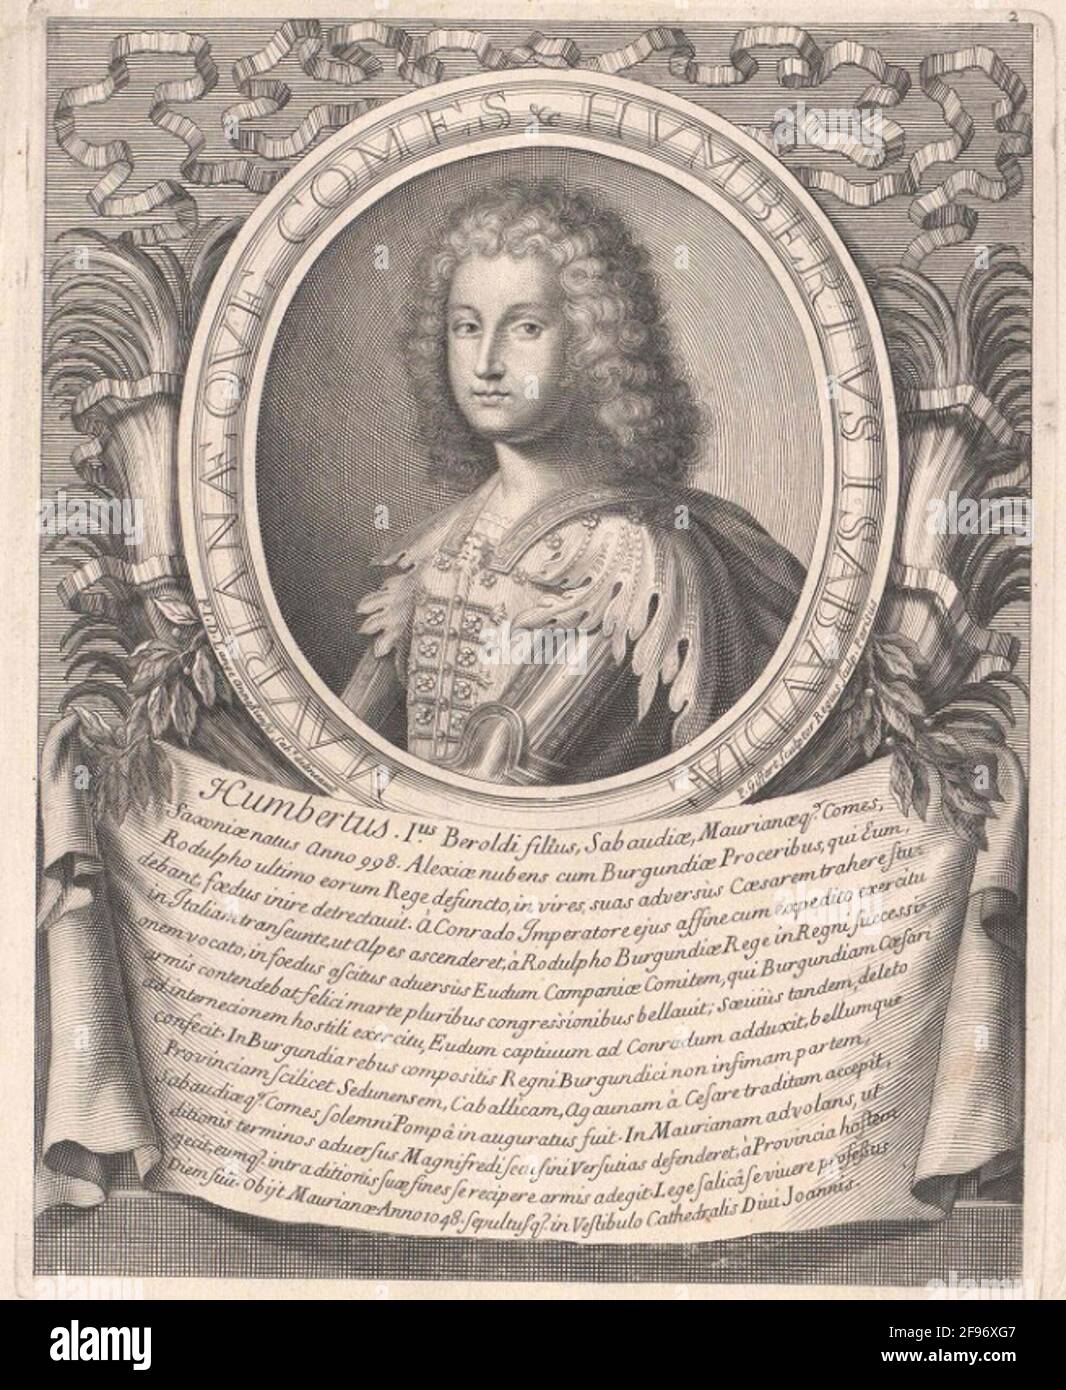 Humbert I, Count of Savoyen. Stock Photo